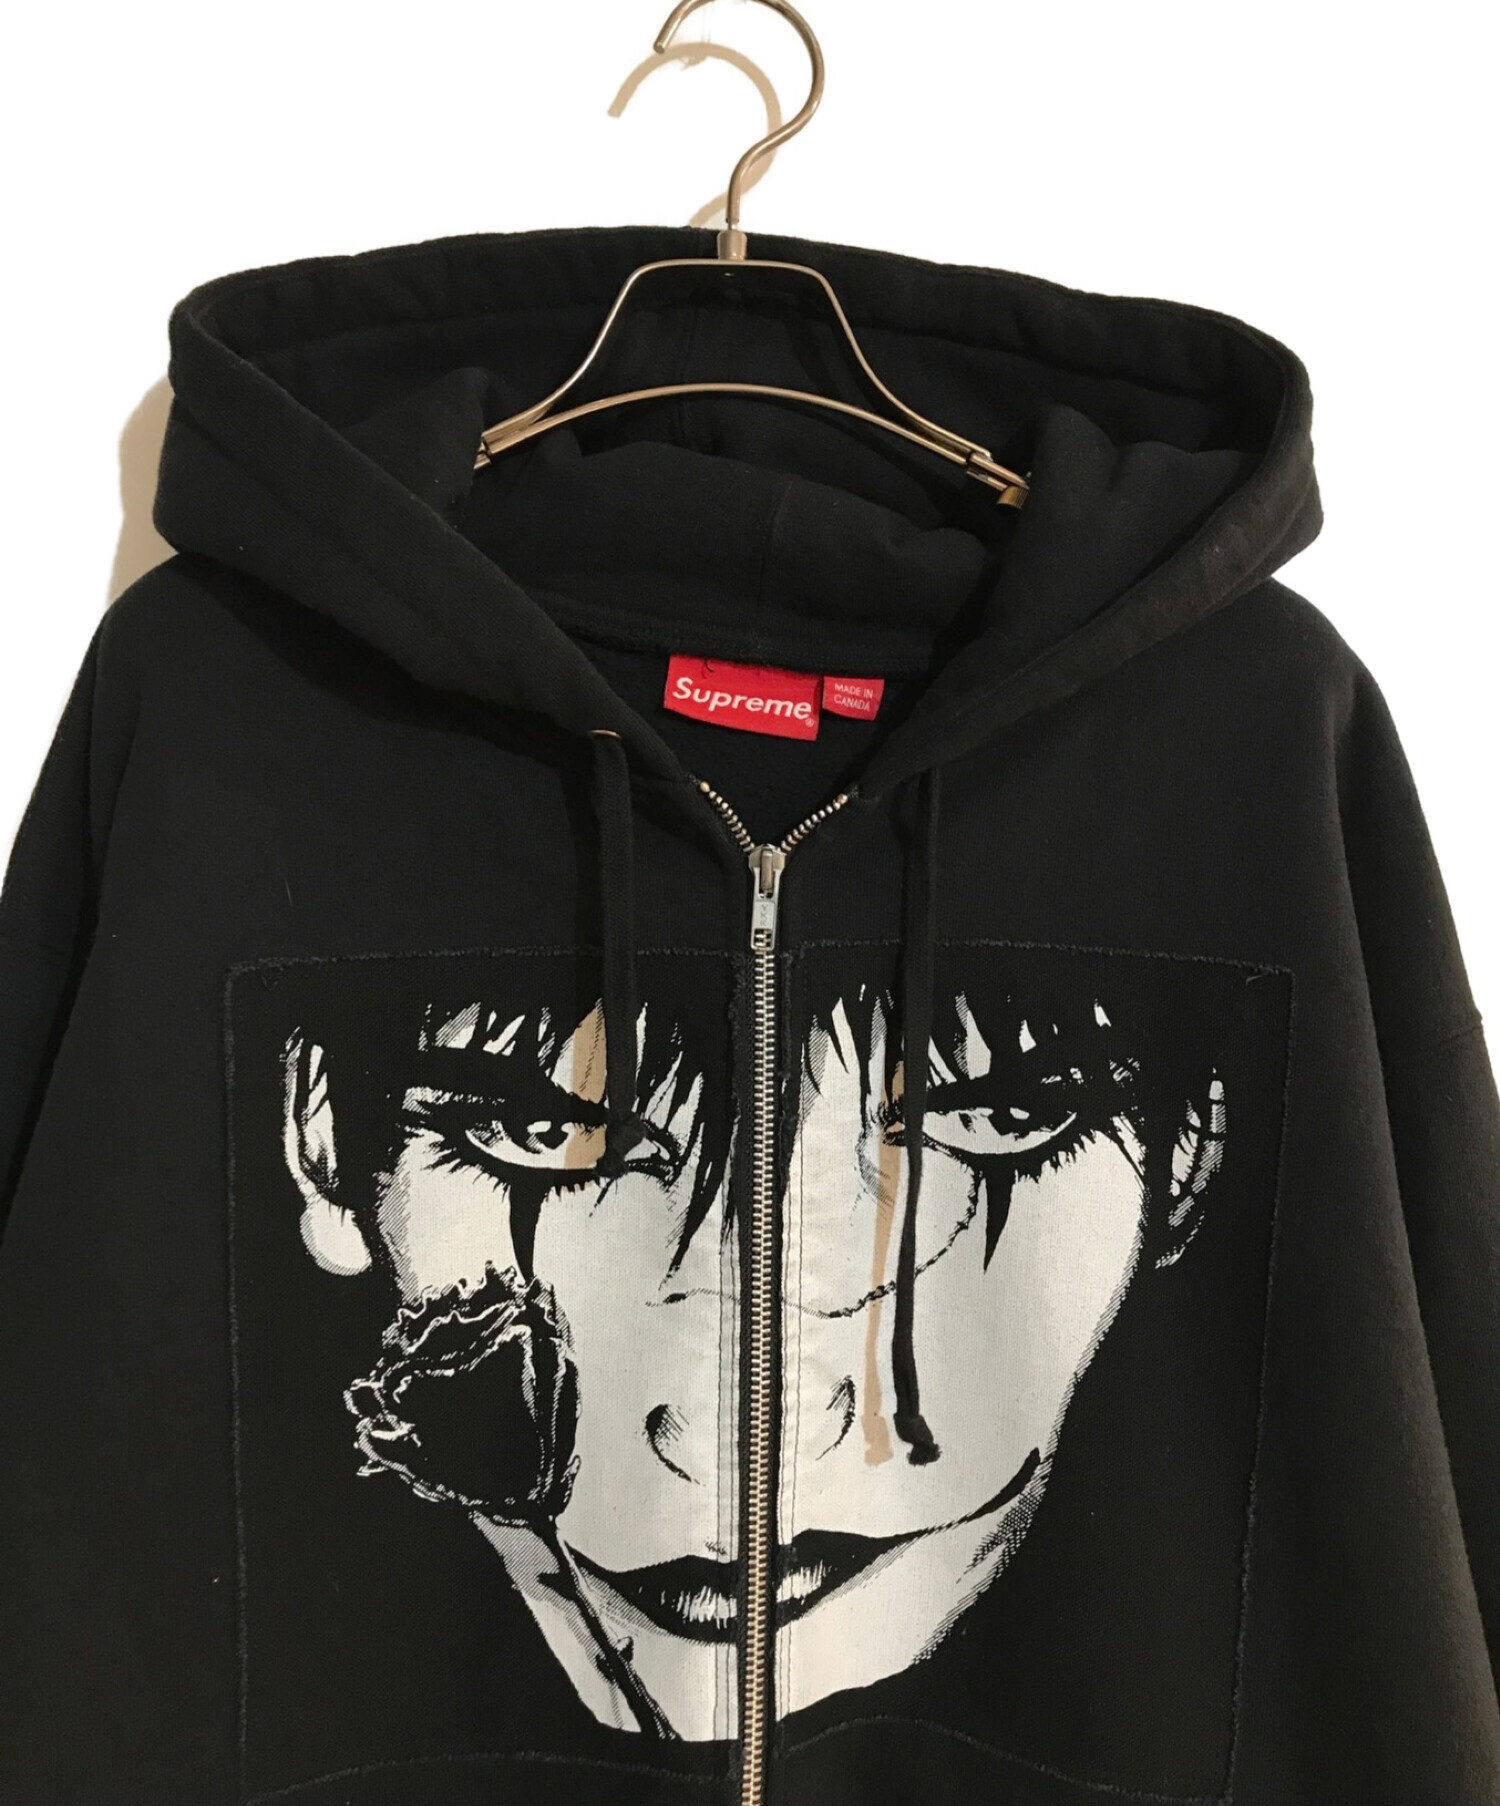 Supreme (シュプリーム) the crow hooded sweatshirt/ザクロウ フーデットスウェットシャツ ブラック  サイズ:SIZE L